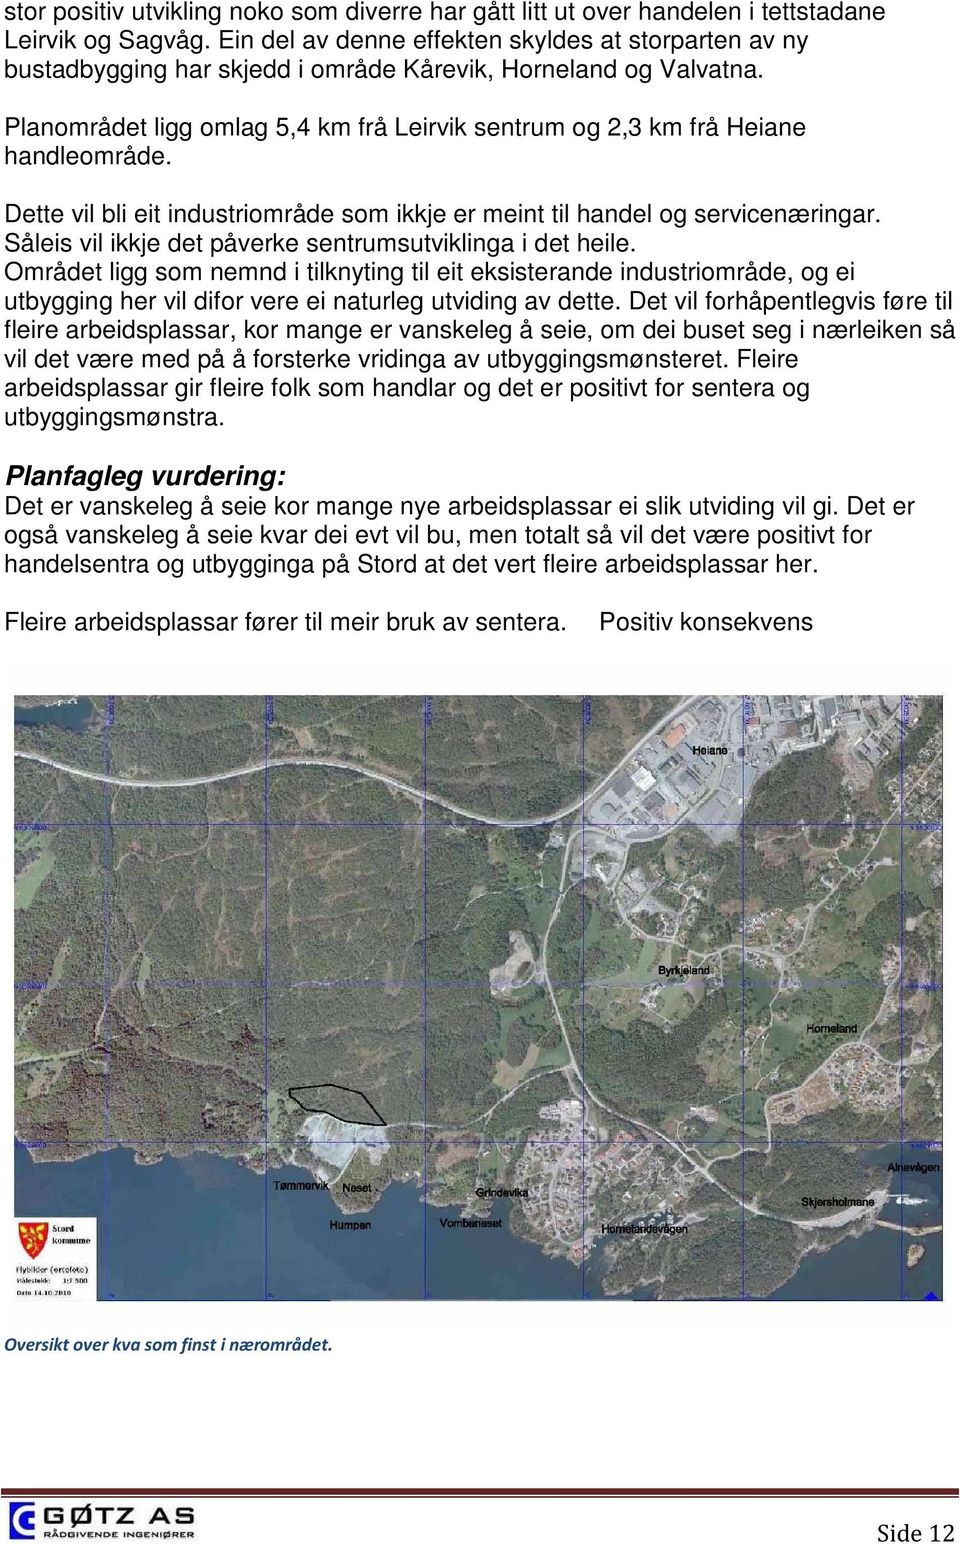 Planområdet ligg omlag 5,4 km frå Leirvik sentrum og 2,3 km frå Heiane handleområde. Dette vil bli eit industriområde som ikkje er meint til handel og servicenæringar.